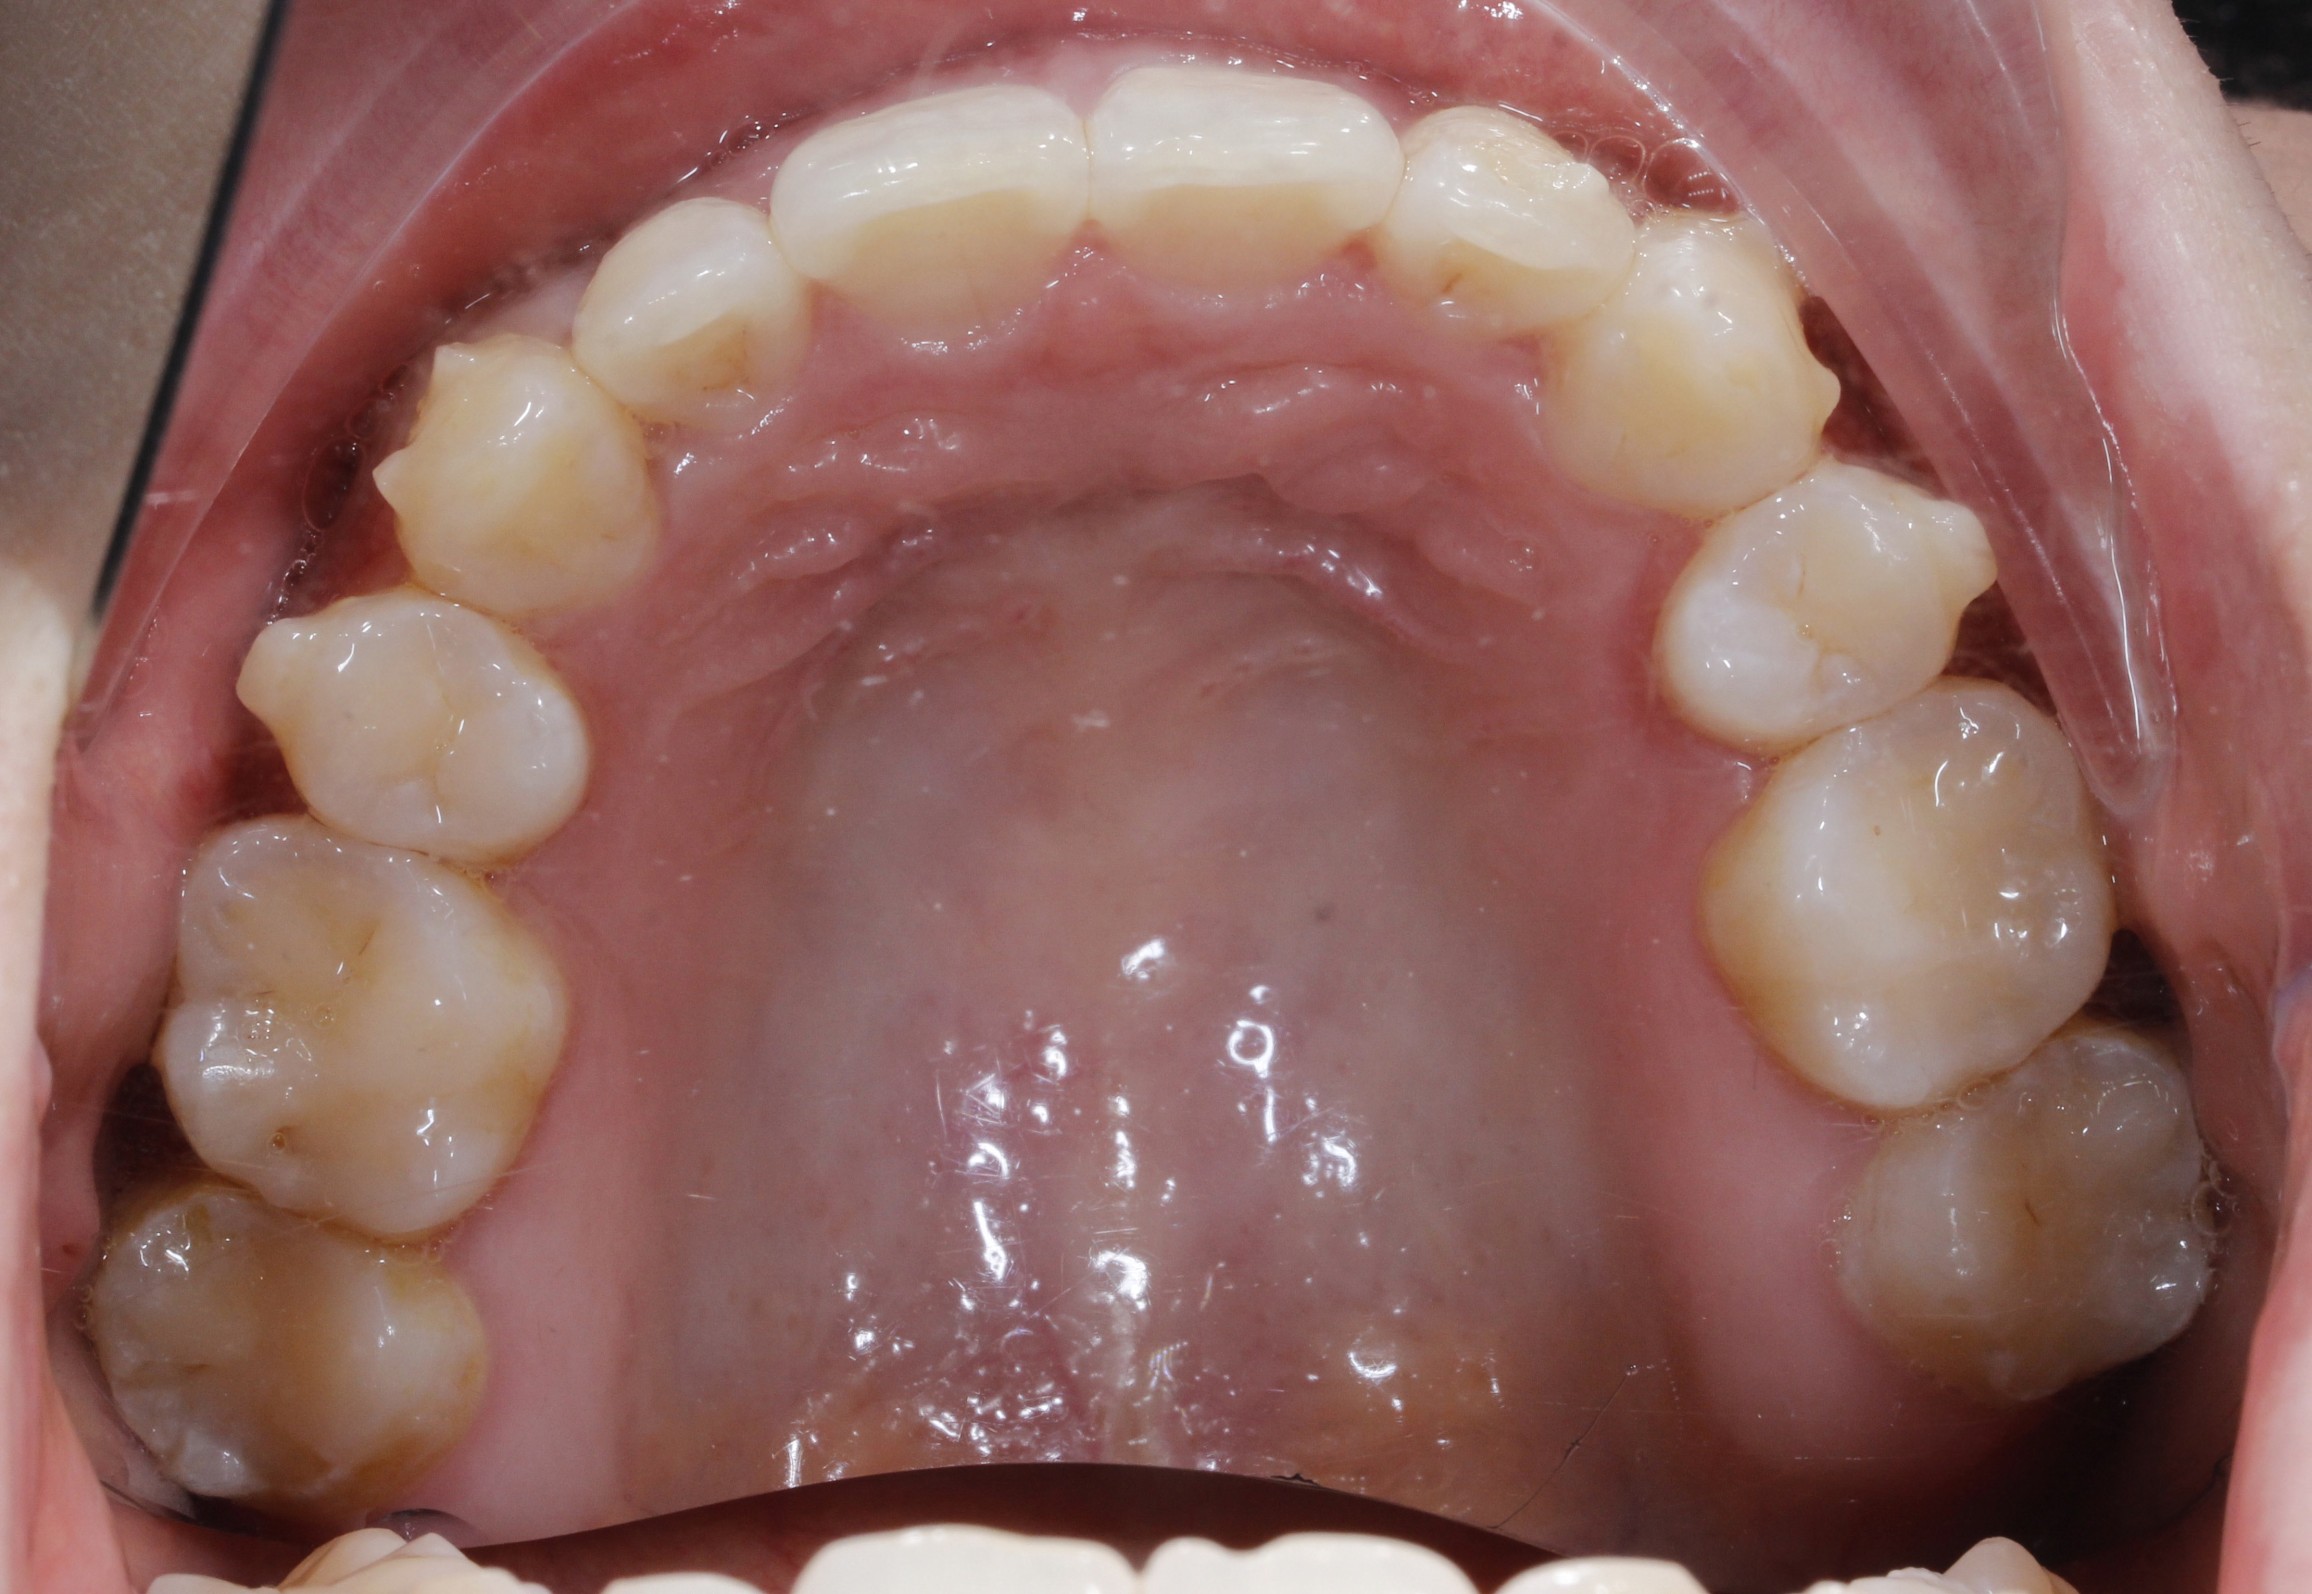 矫正微调前后对比照:现在患者在微调中,牙齿已经排列整齐 ,前牙内收